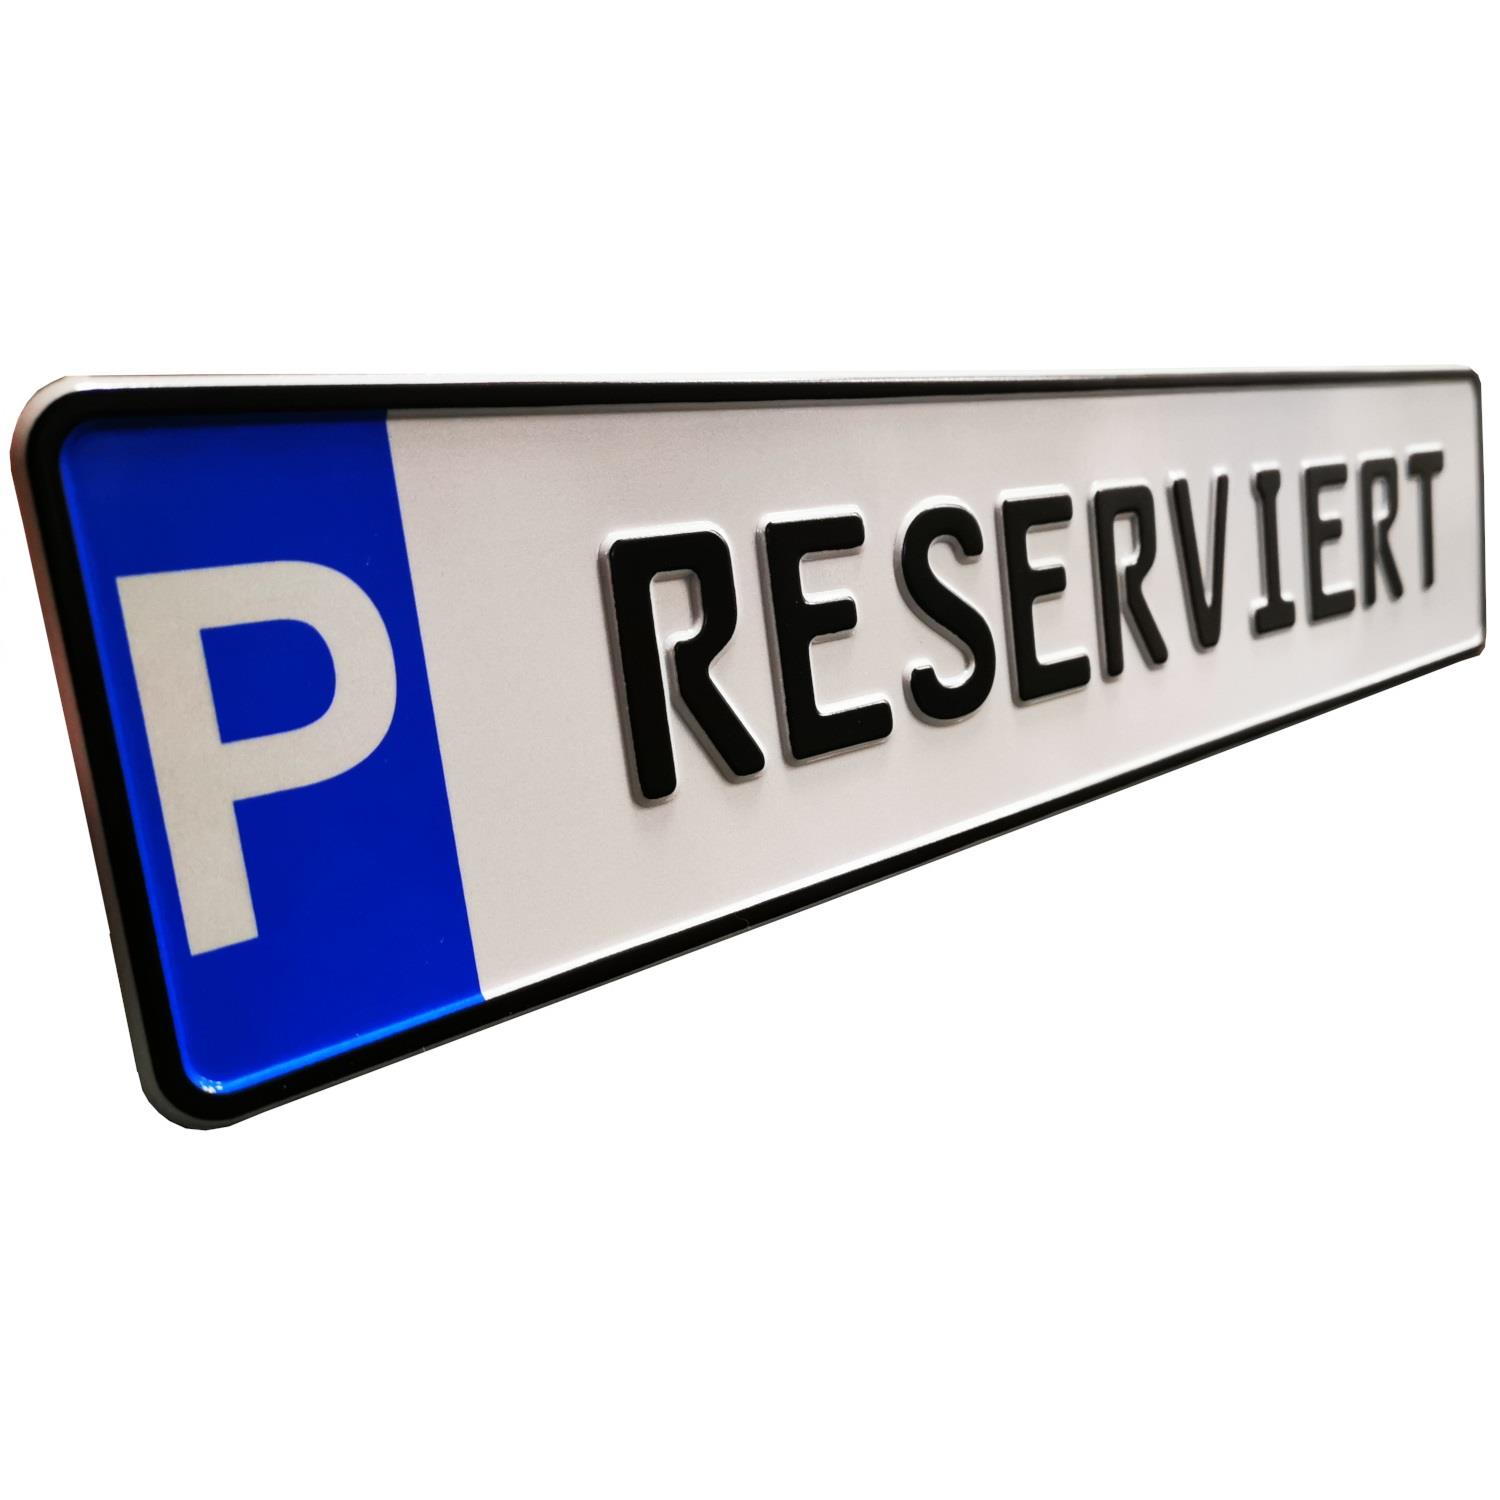 Schild zur Parkplatzkennzeichnung "P-RESERVIERT"- KFZ Normgröße, Kleinschrift, geprägt.